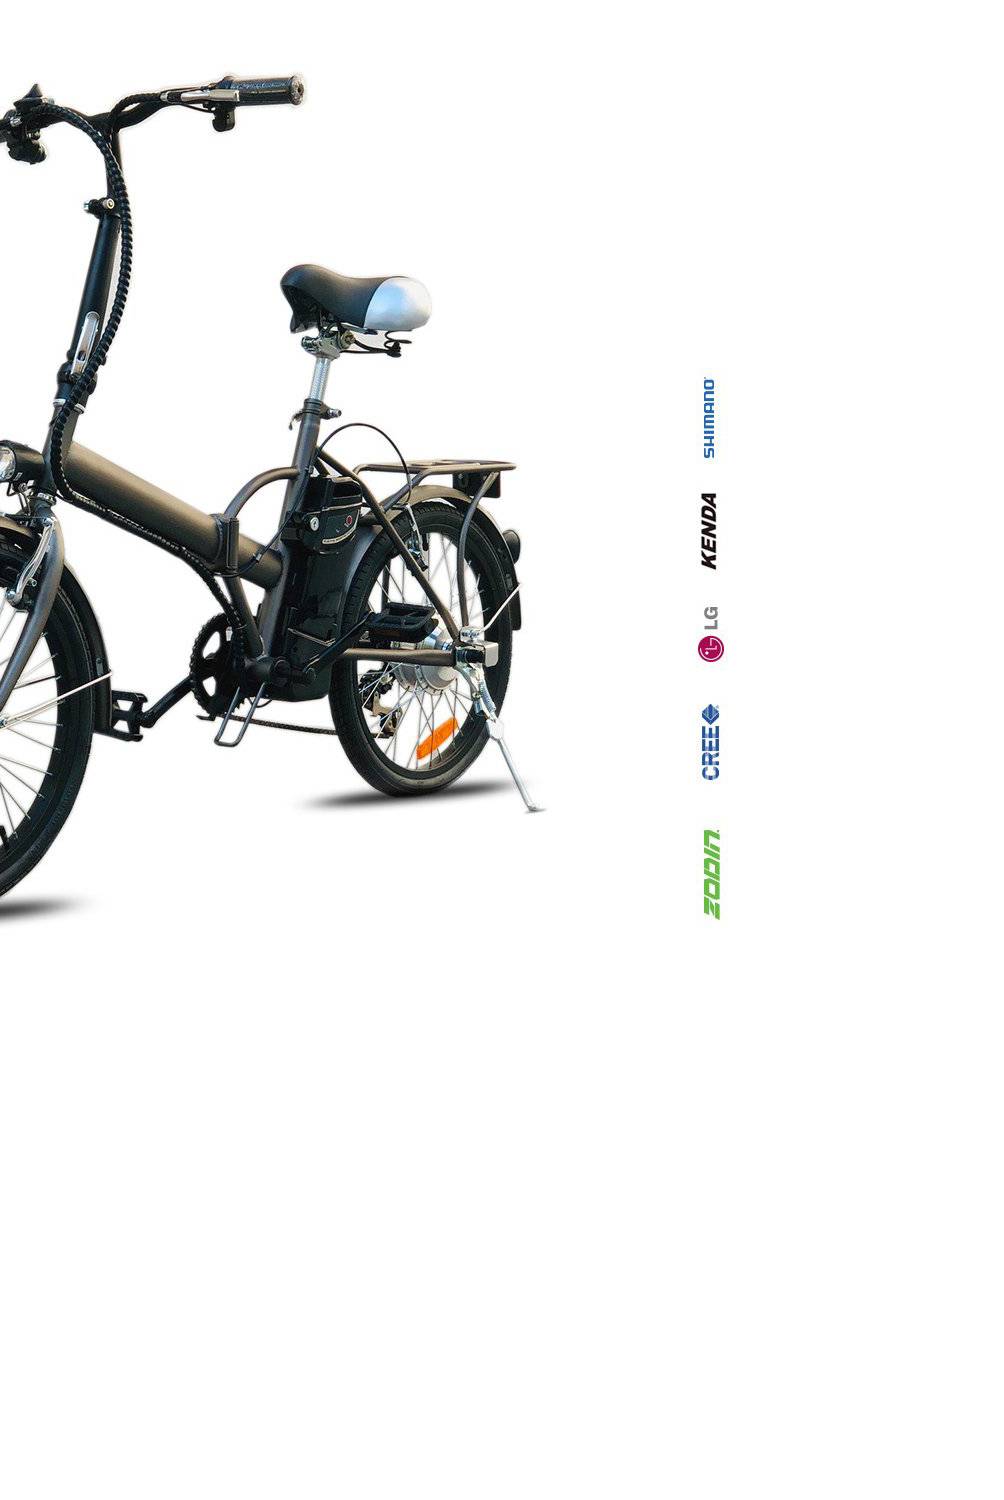 ZODIN - Bicicleta Aro 20" Electrica Plegable Antracita